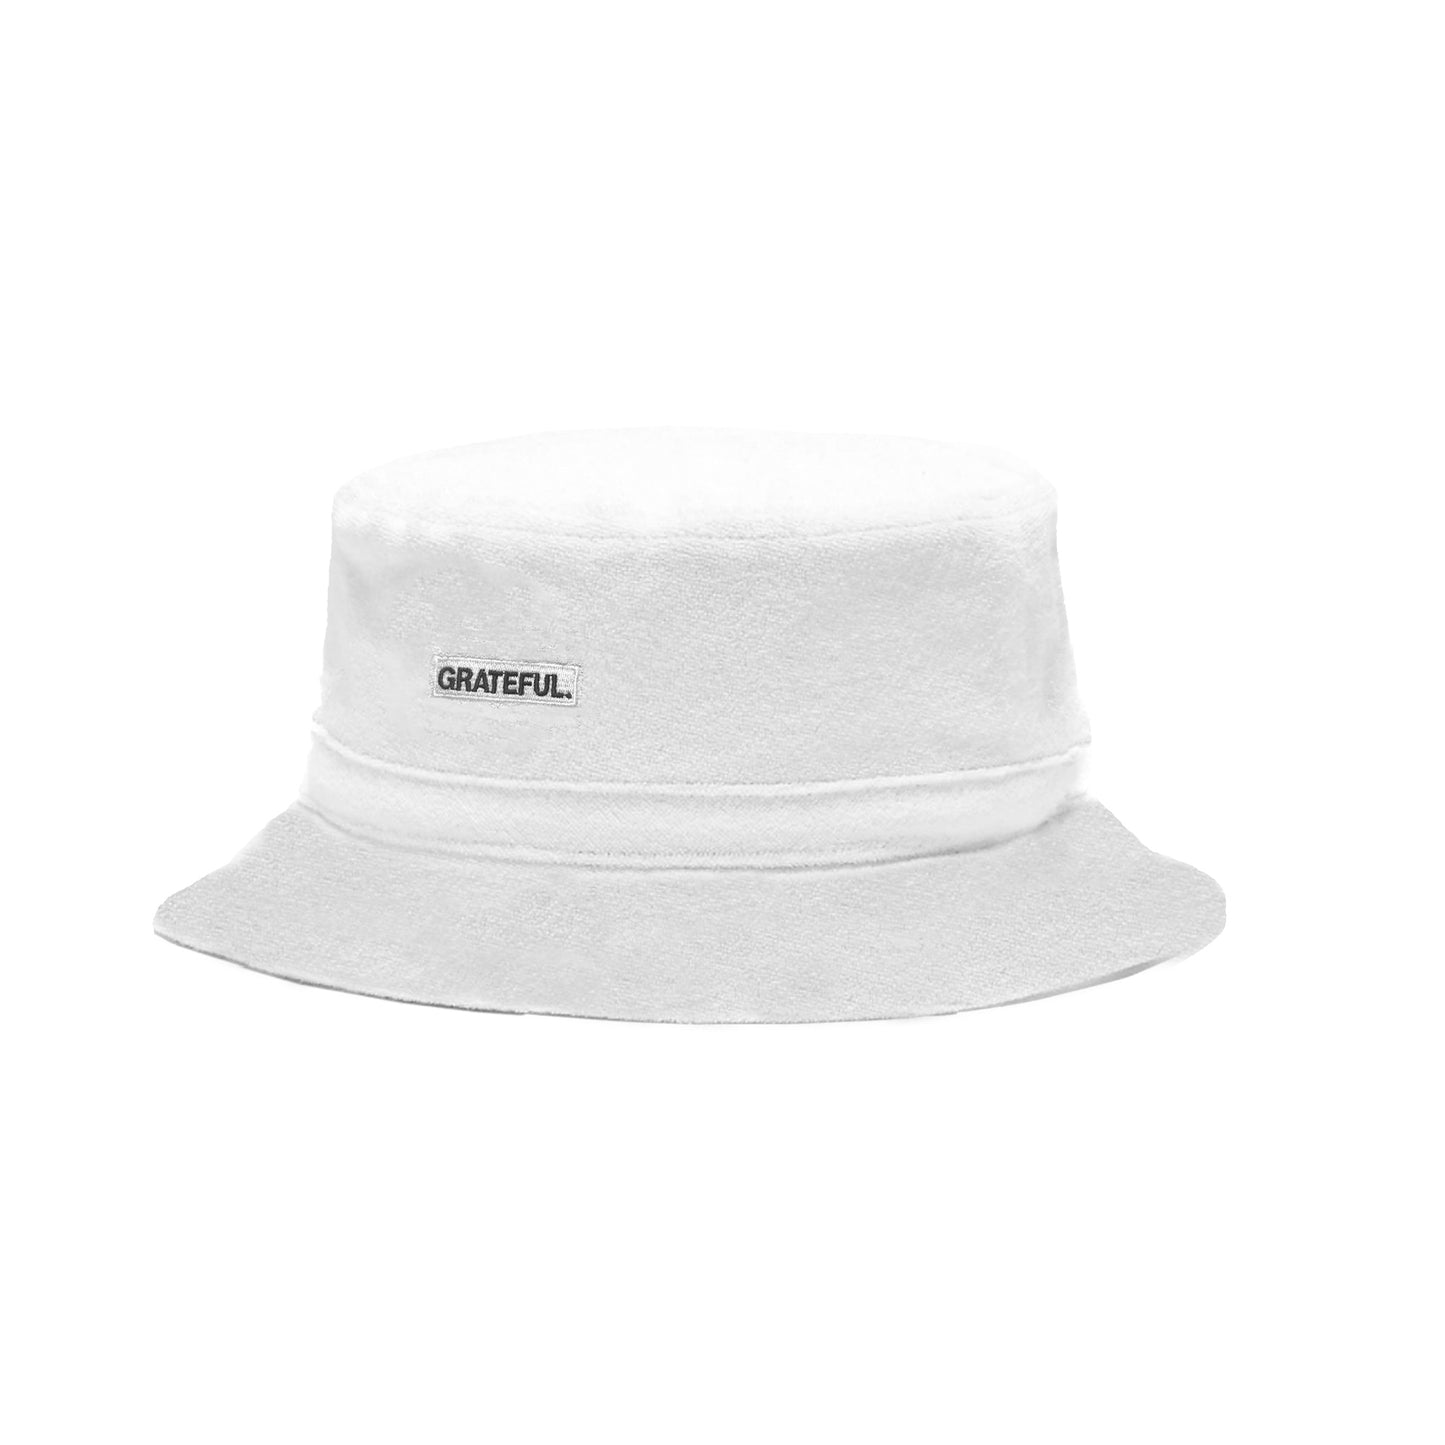 Grateful Bucket Hat (White)